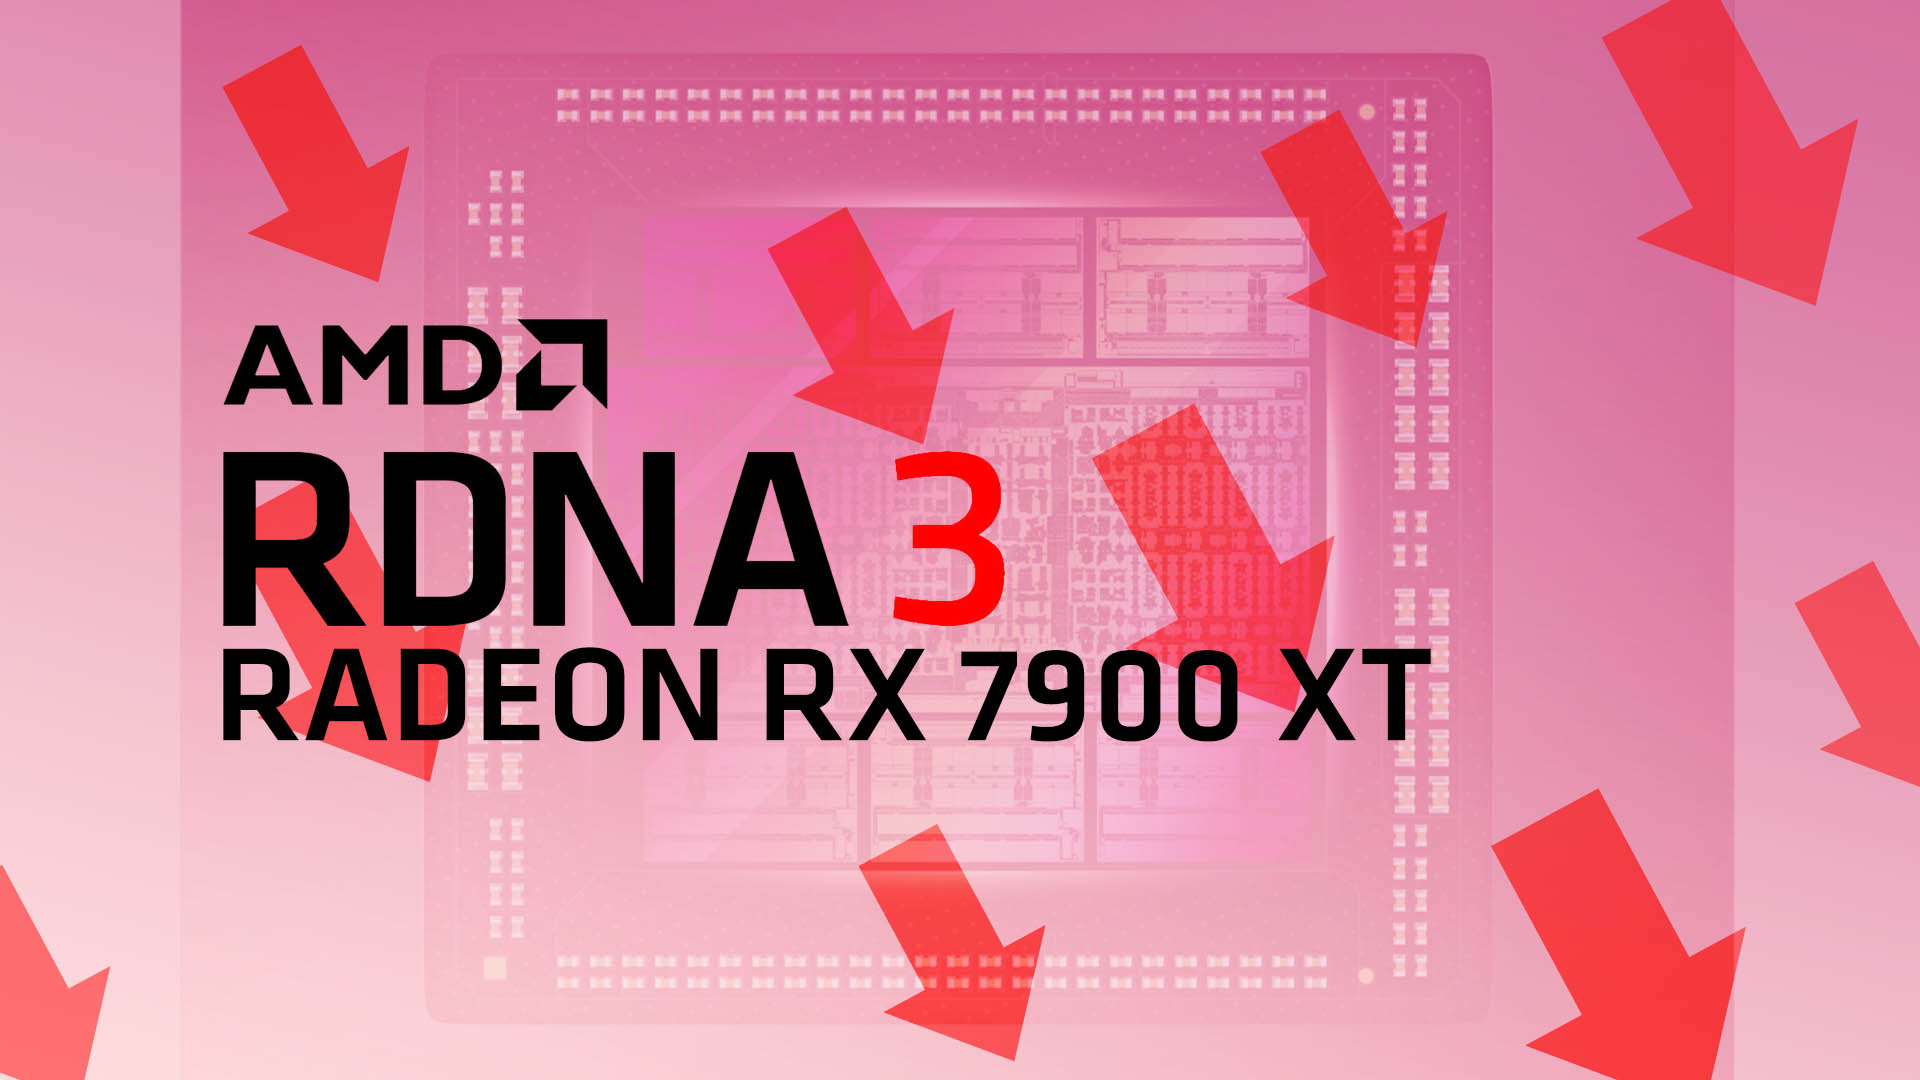 AMD Radeon RX 7900 XTが15.6万円で販売中。北米や欧州でも値下げ